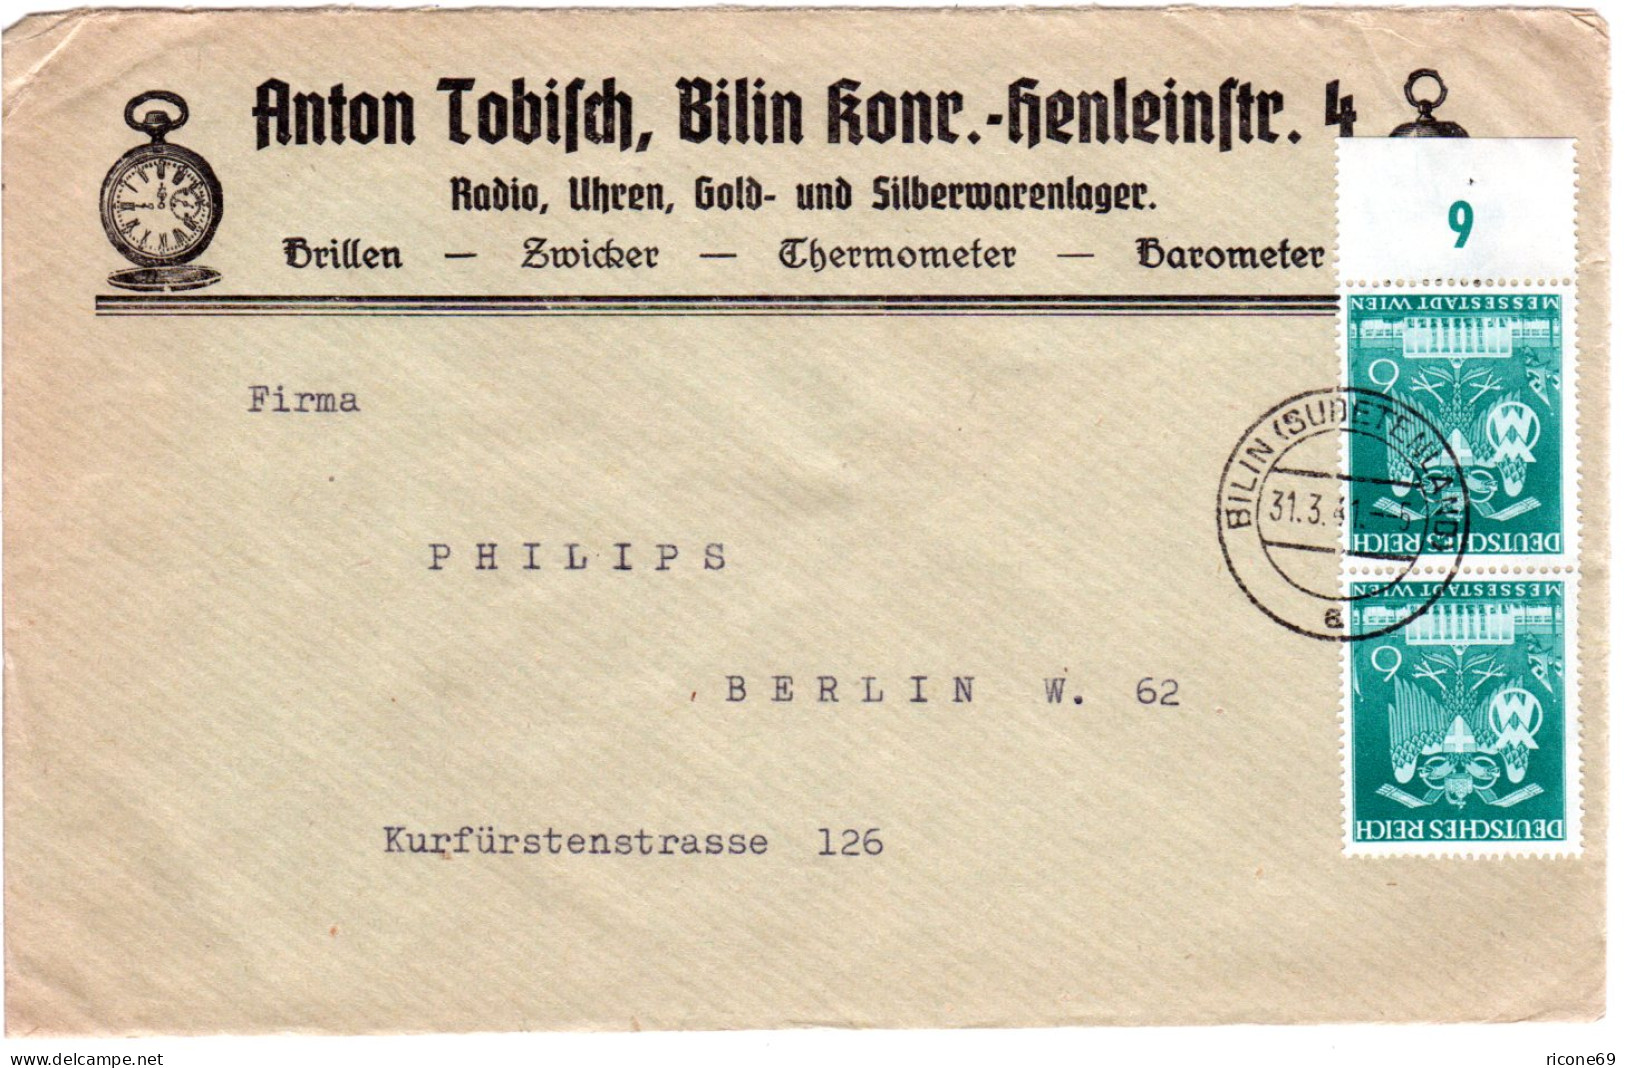 DR 1941, Paar 6 Pf. Auf Firmen Reklame Brief V. Bilin  M. Abb. Taschenuhr - Lettres & Documents